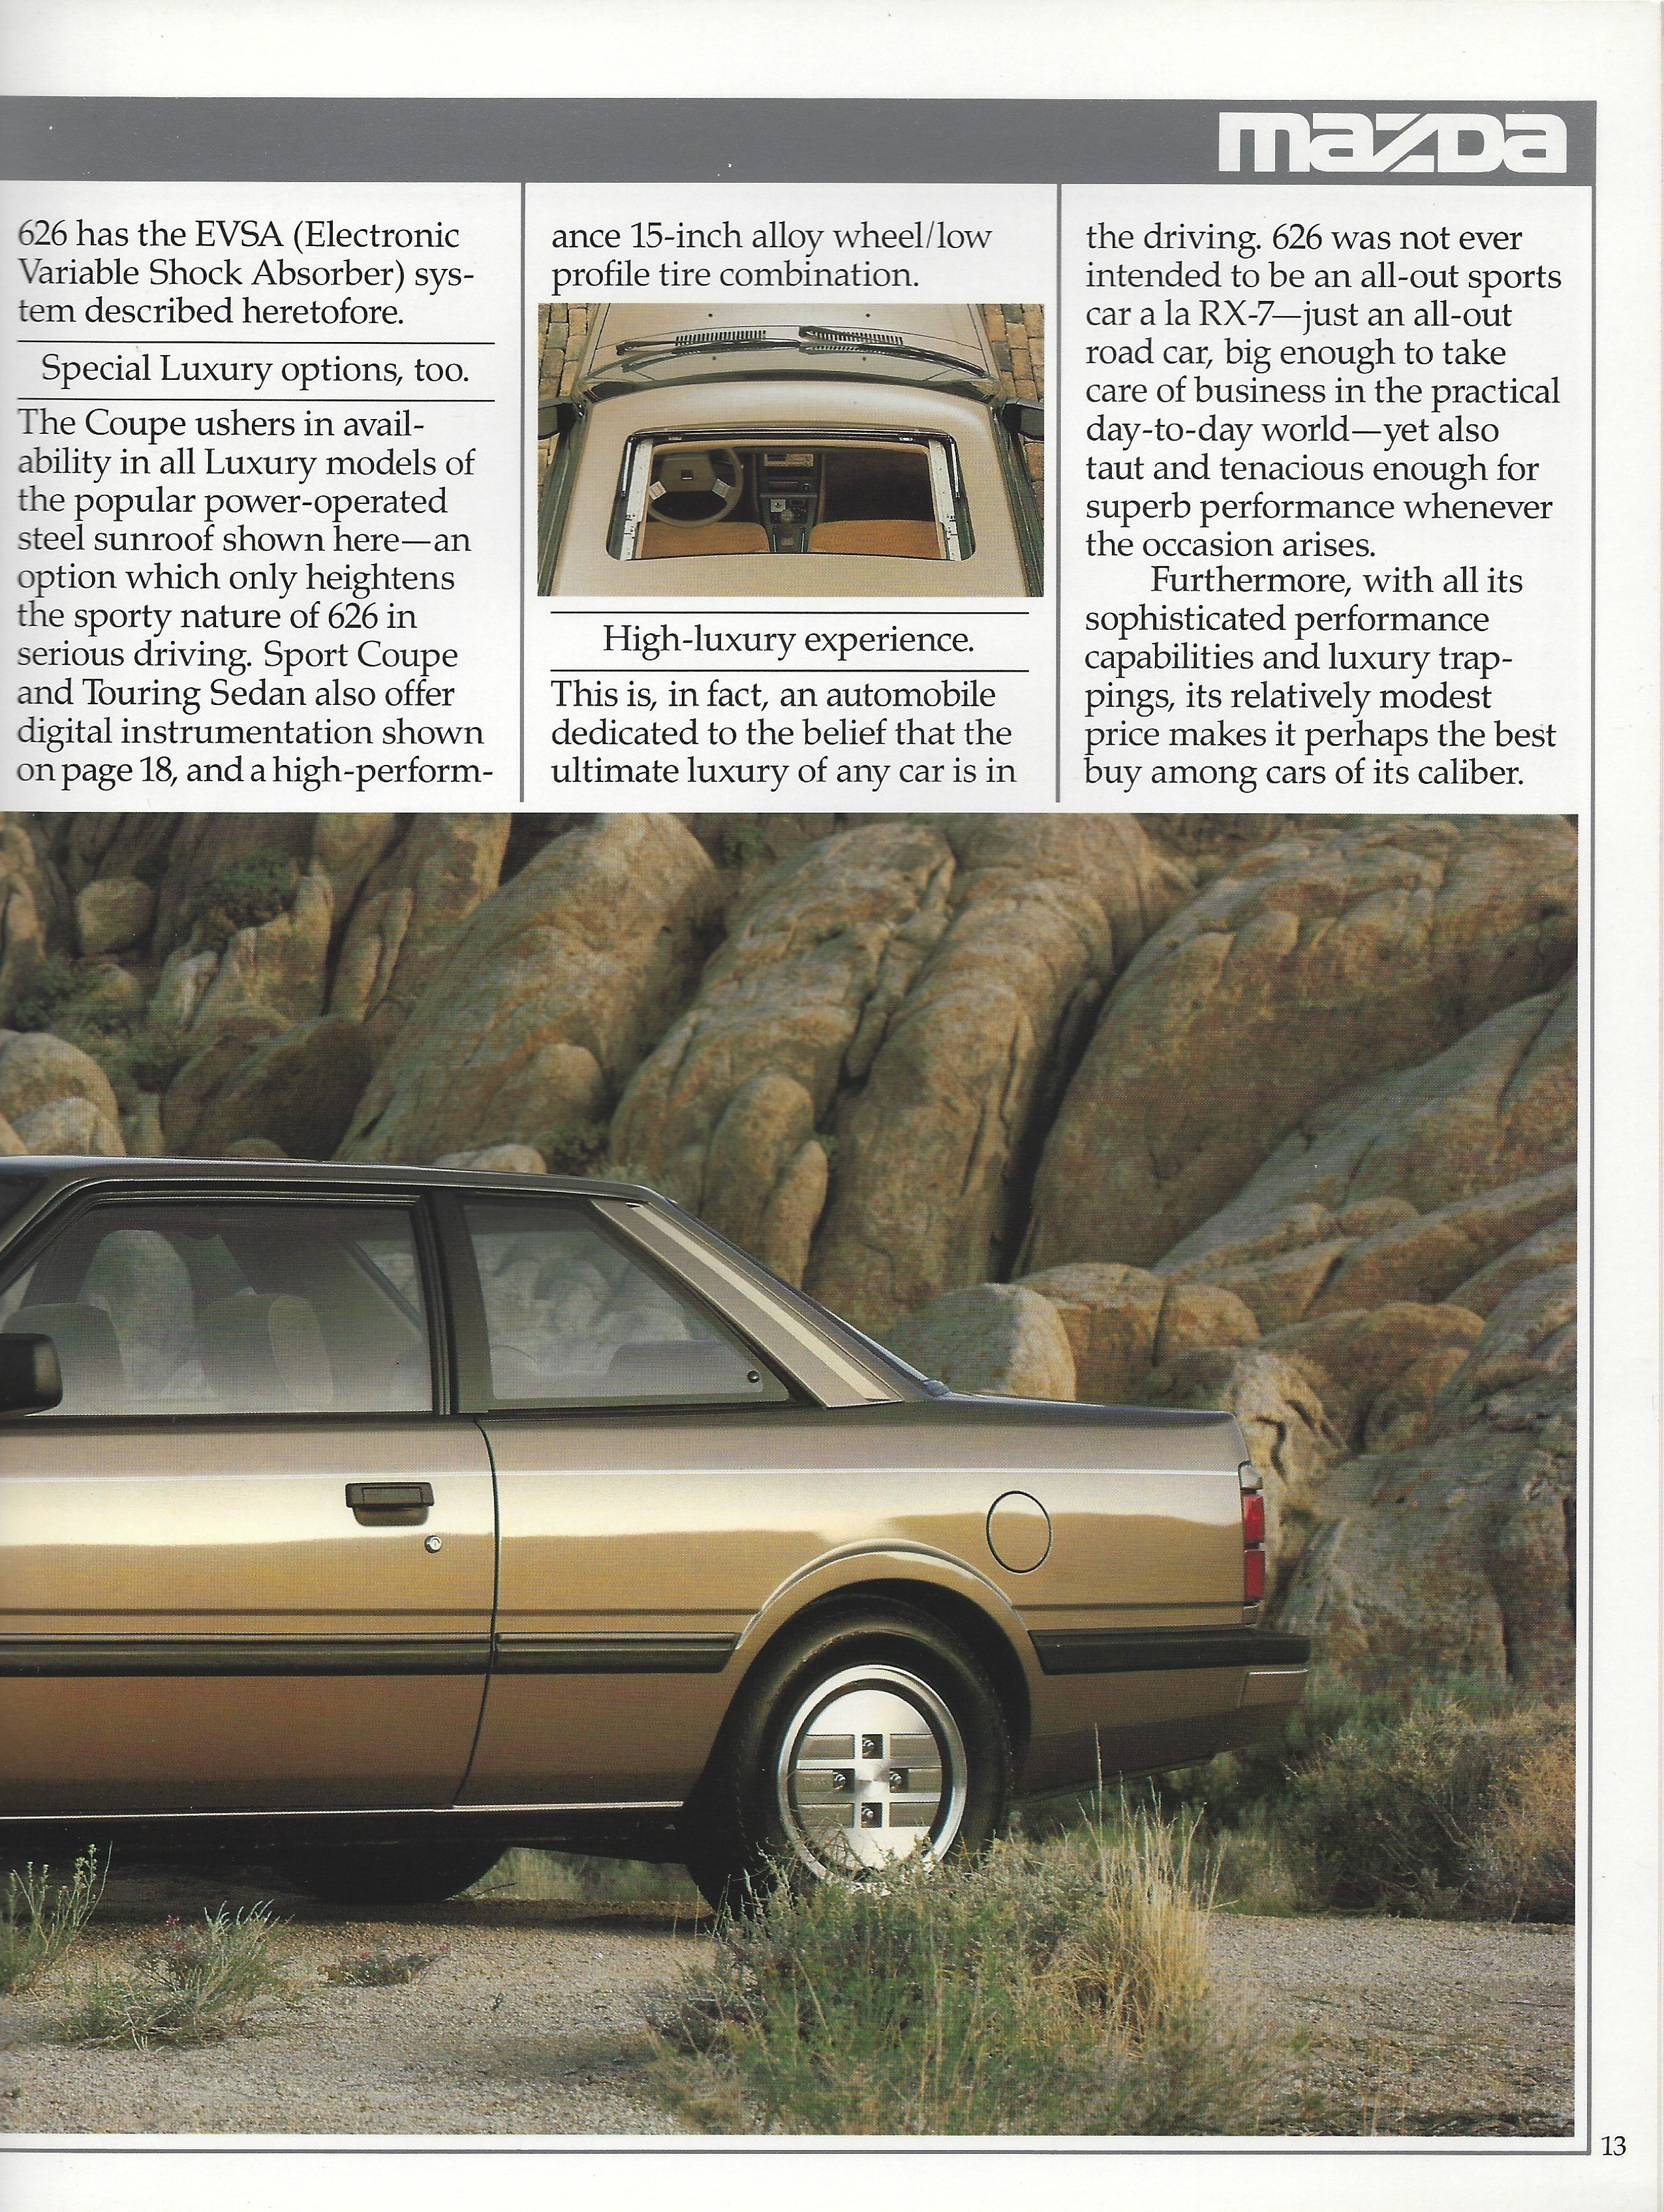 1985 Mazda 626 Brochure 13